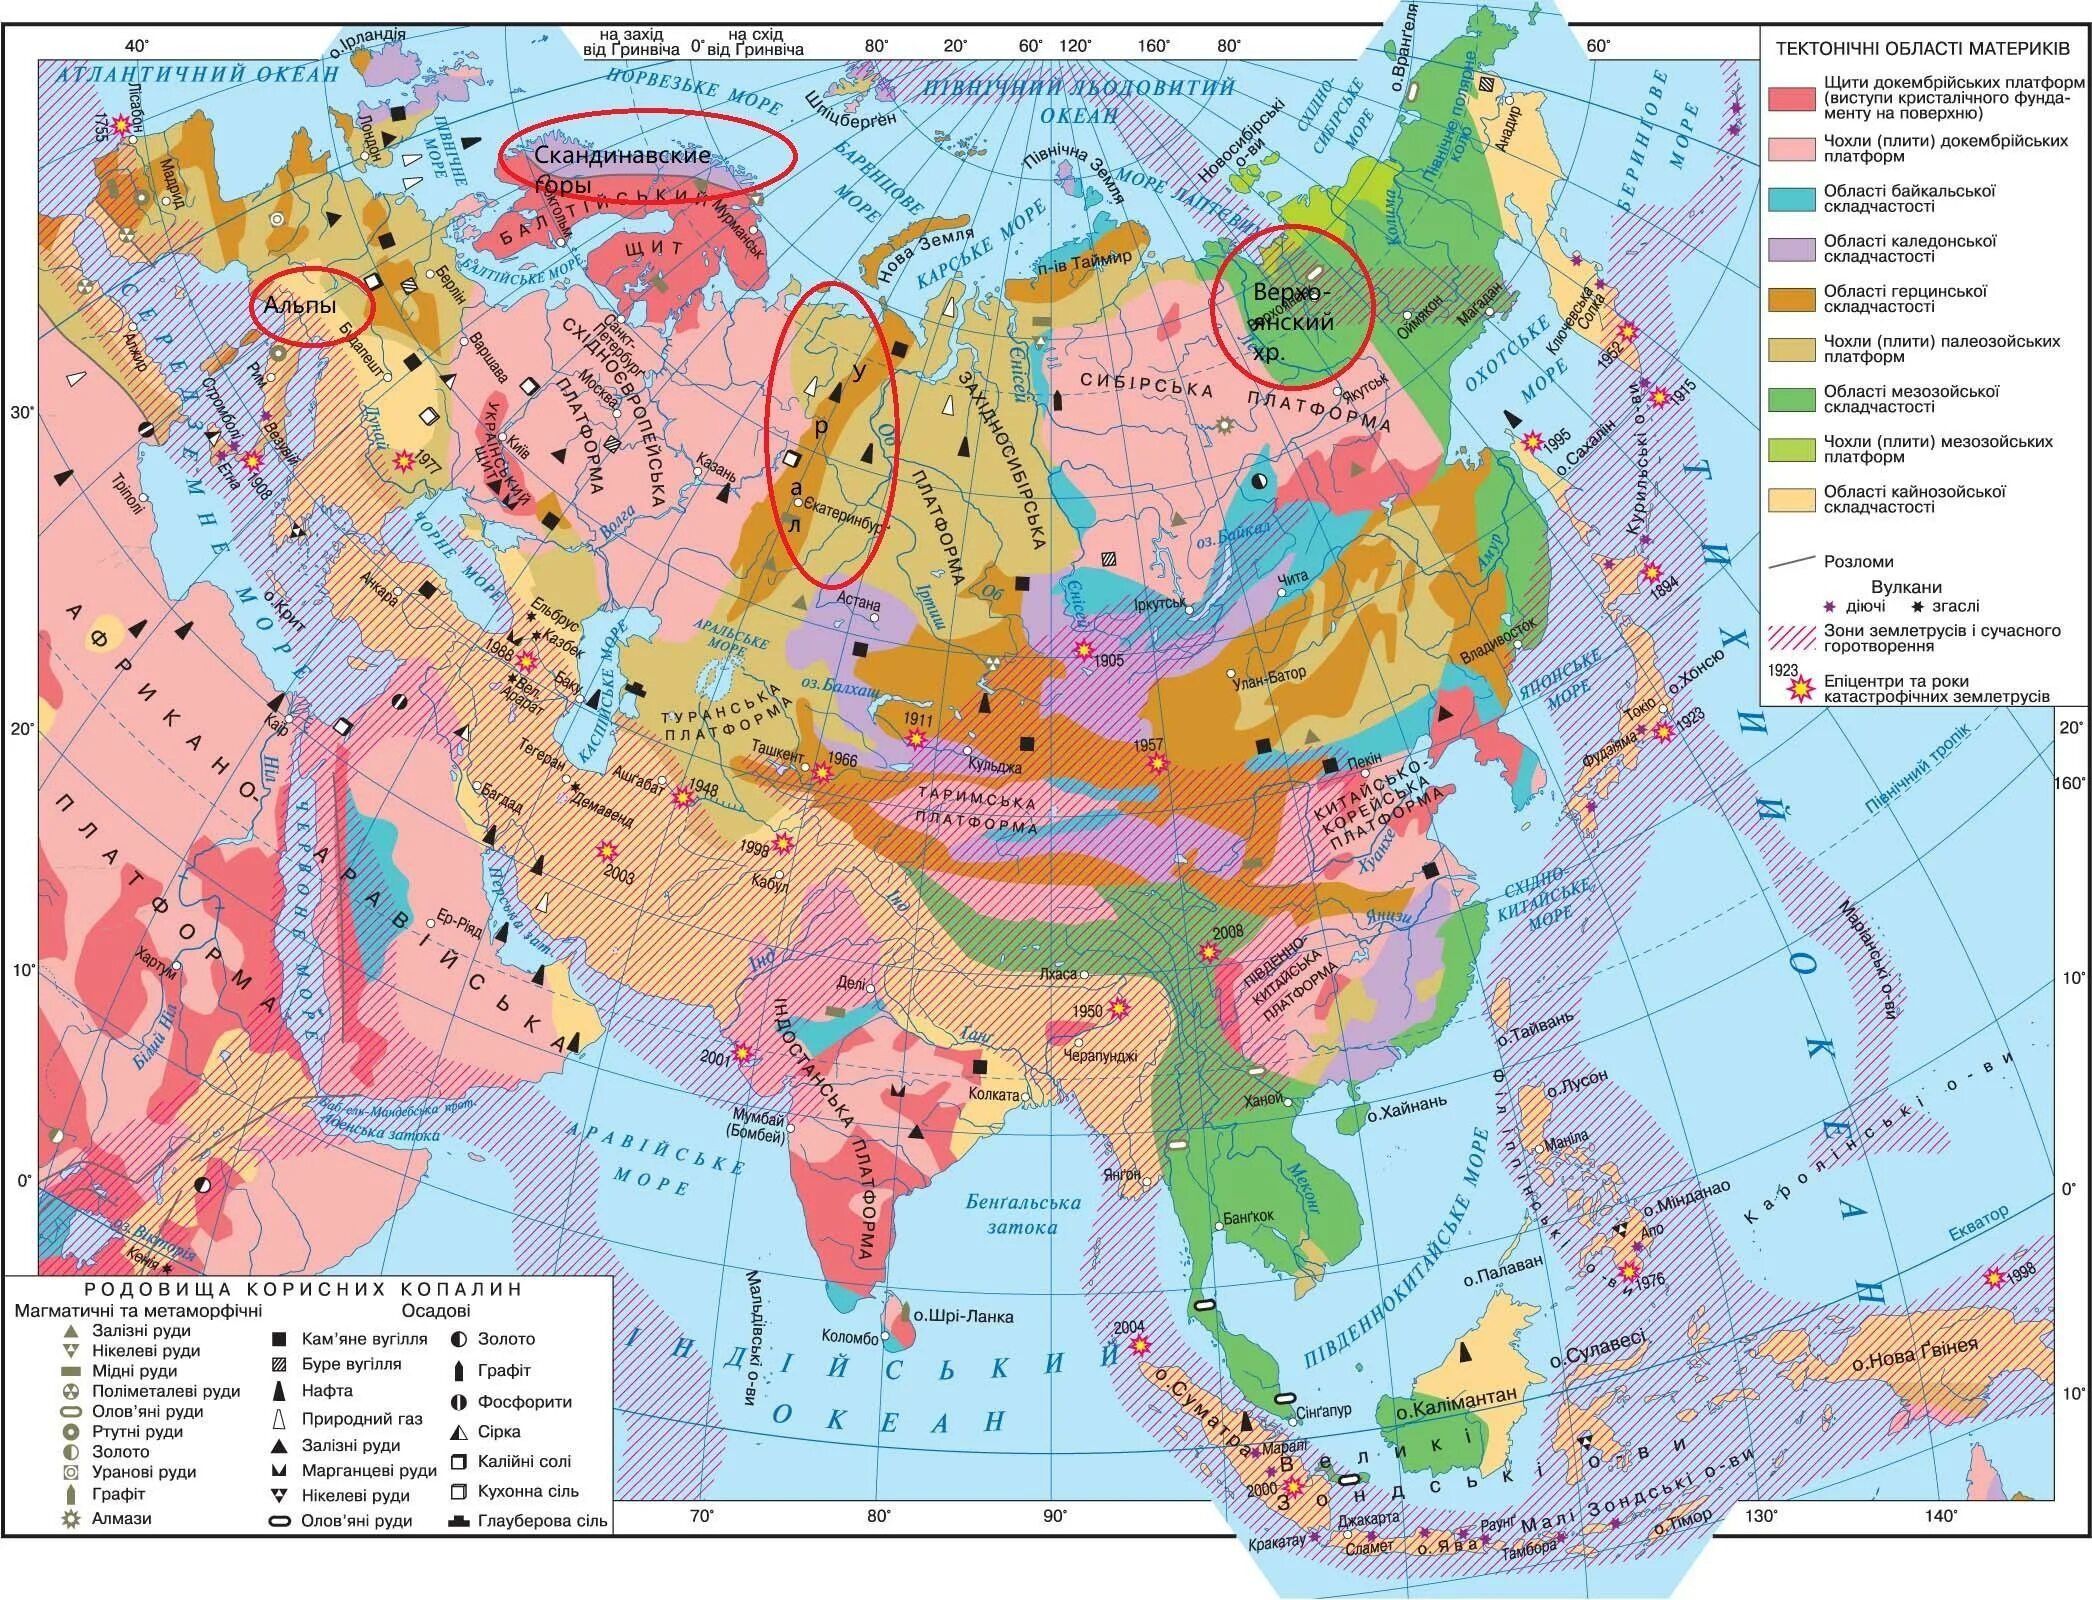 Тектоническое строение Евразии карта. Карта строения земной коры Евразии. Тектоническая карта зарубежной Азии. Карта тектонических структур Евразии. Какие платформы лежат в основании евразии